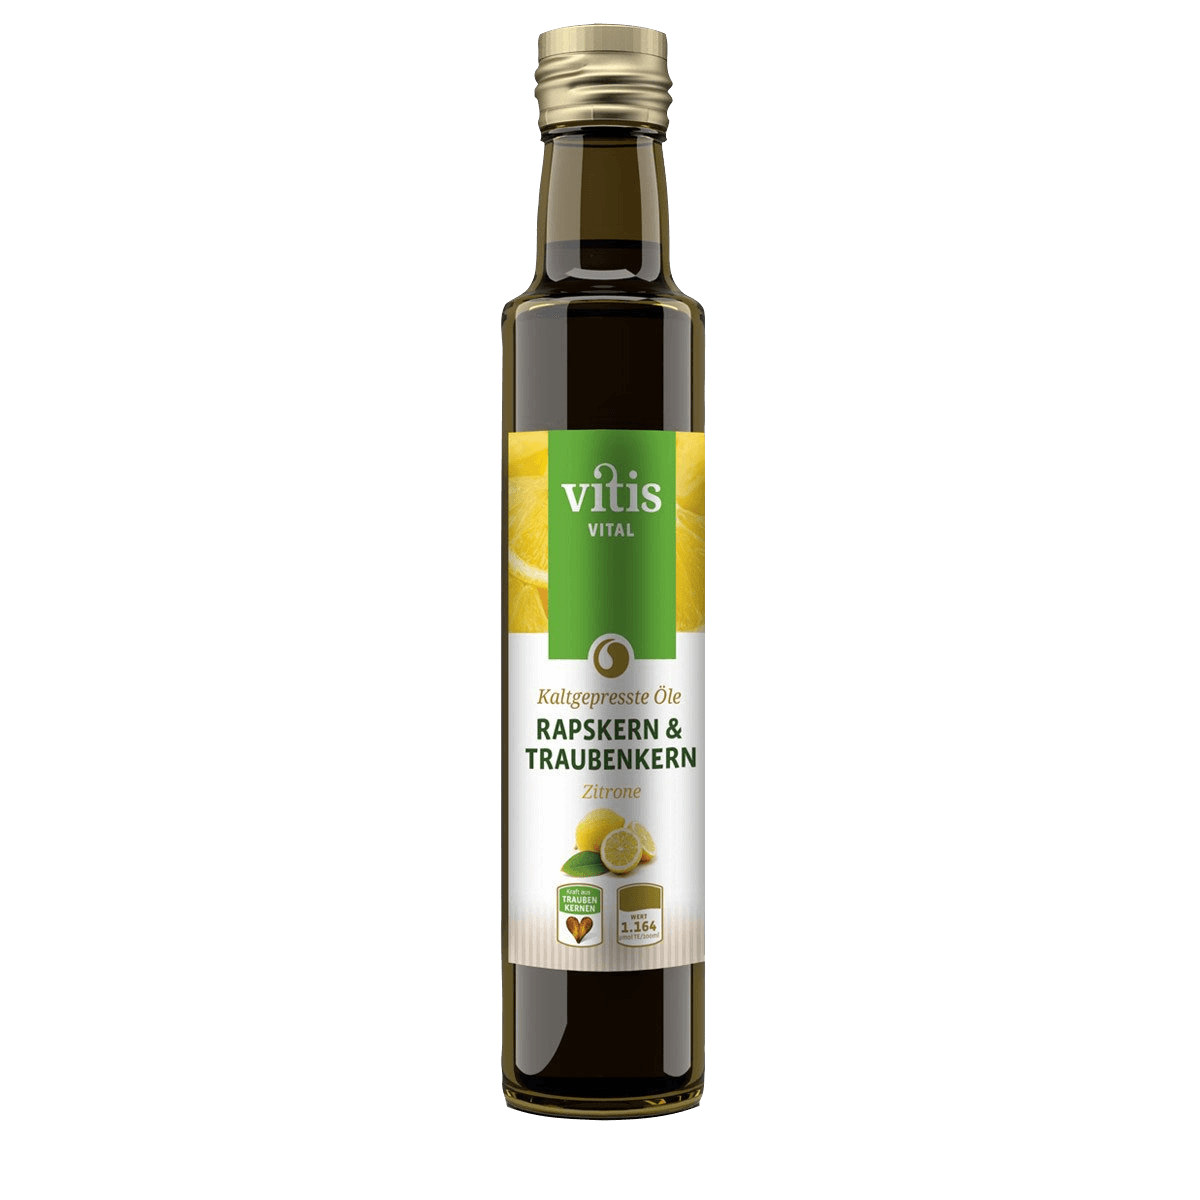 Eine Flasche Raps- und Traubenkernöl Geschmacksrichtung Zitrone von der Firma Vitis Traubenkern GmbH.